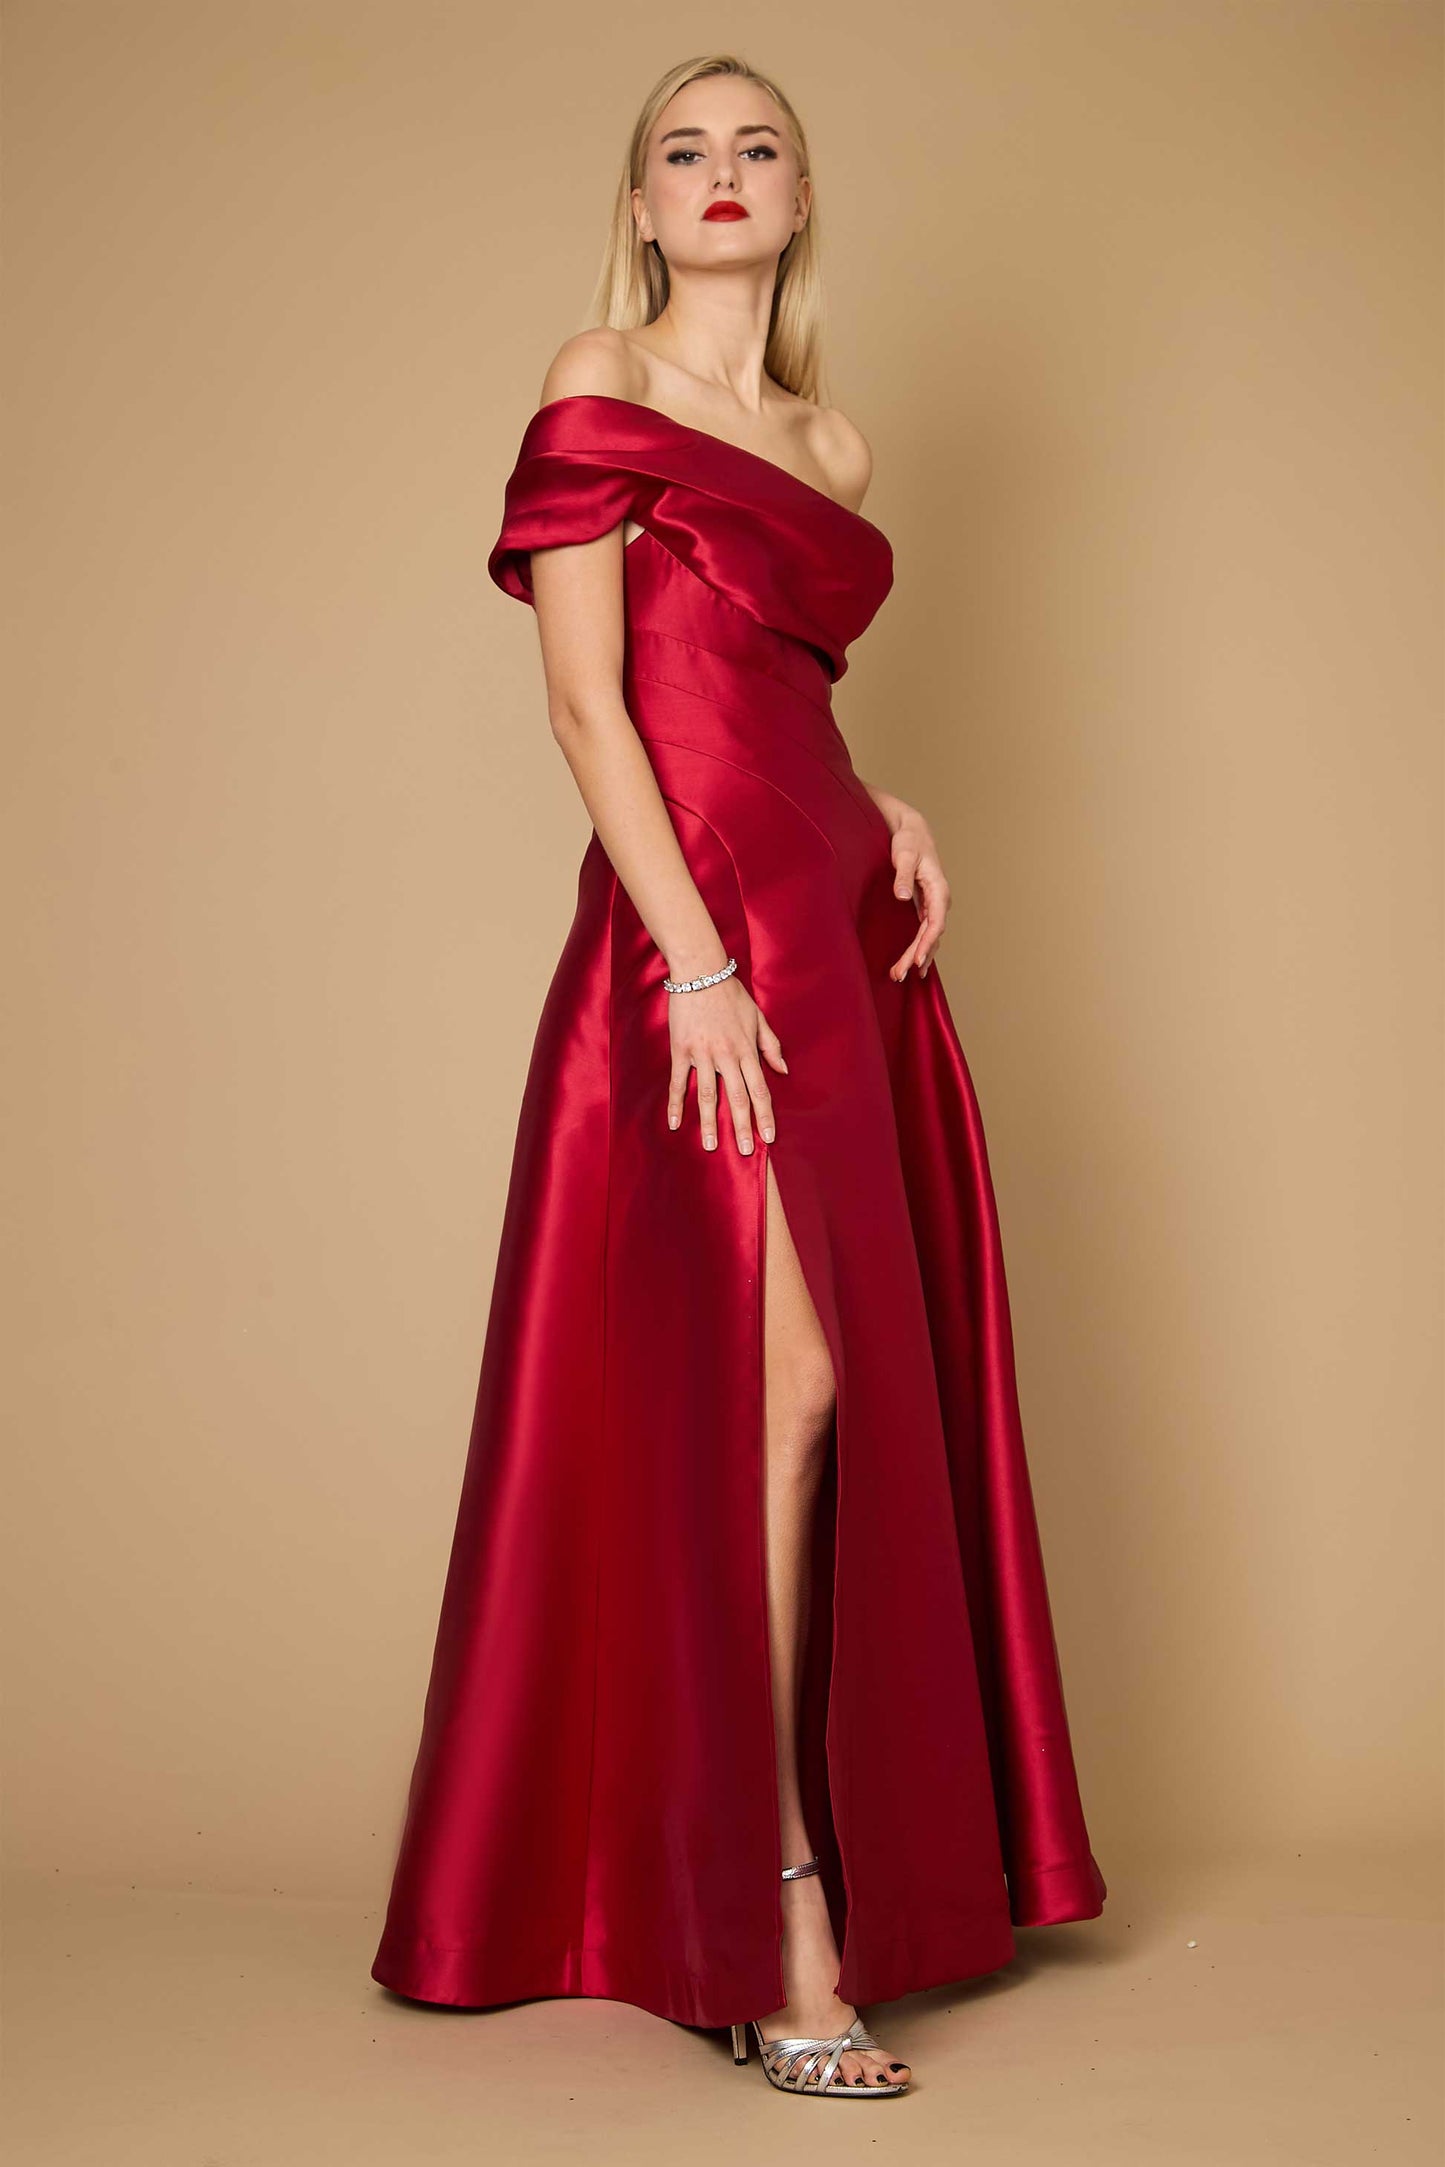 Formal Dresses One Shoulder Long Formal Ball Gown Evening Dress Burgundy